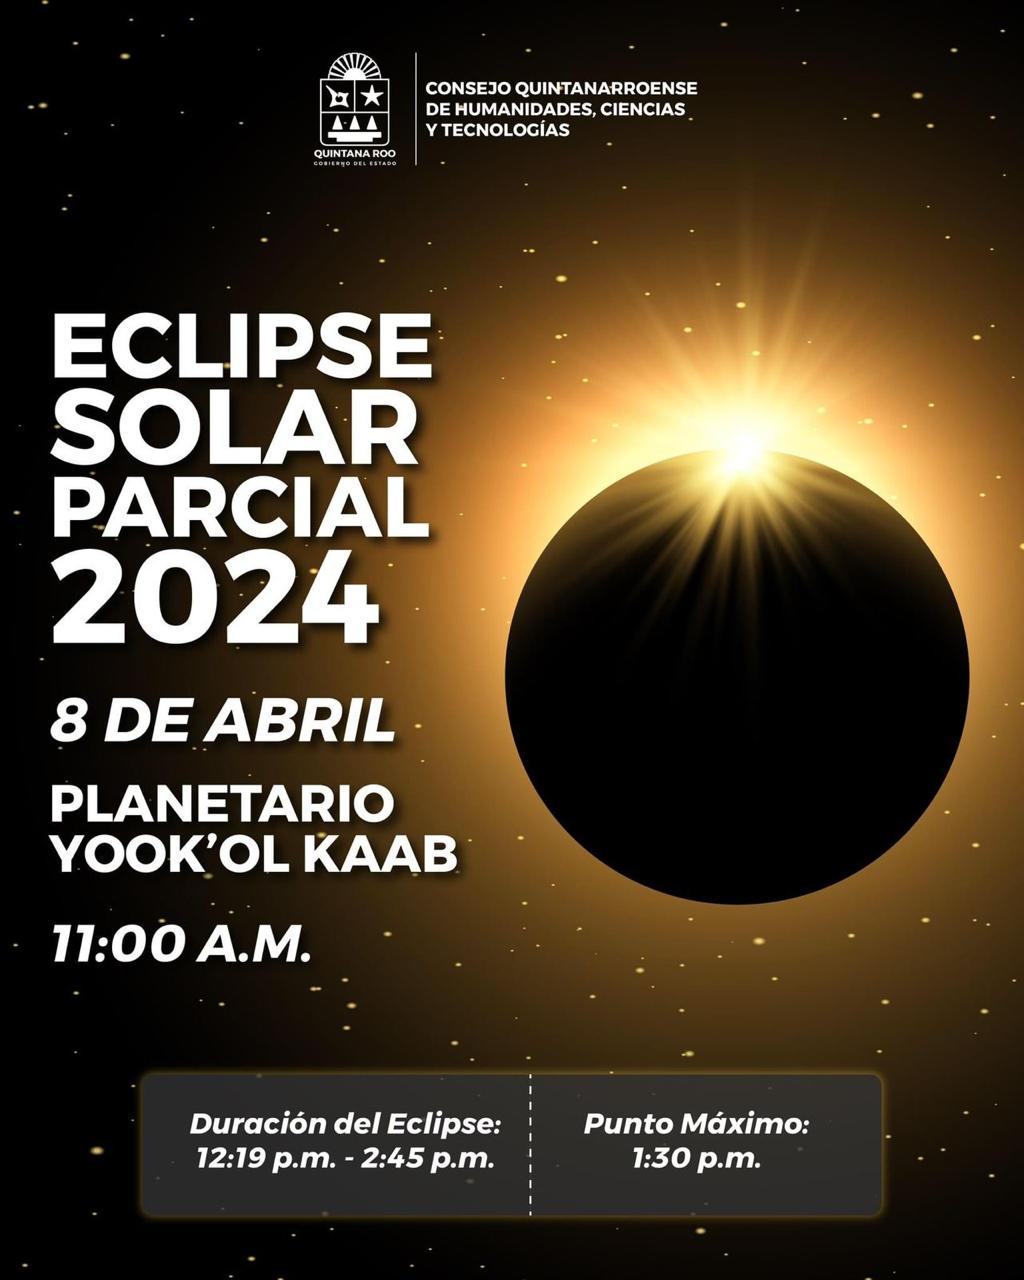 Observa el Eclipse Solar Parcial en Quintana Roo: Recomendaciones del COQHCYT